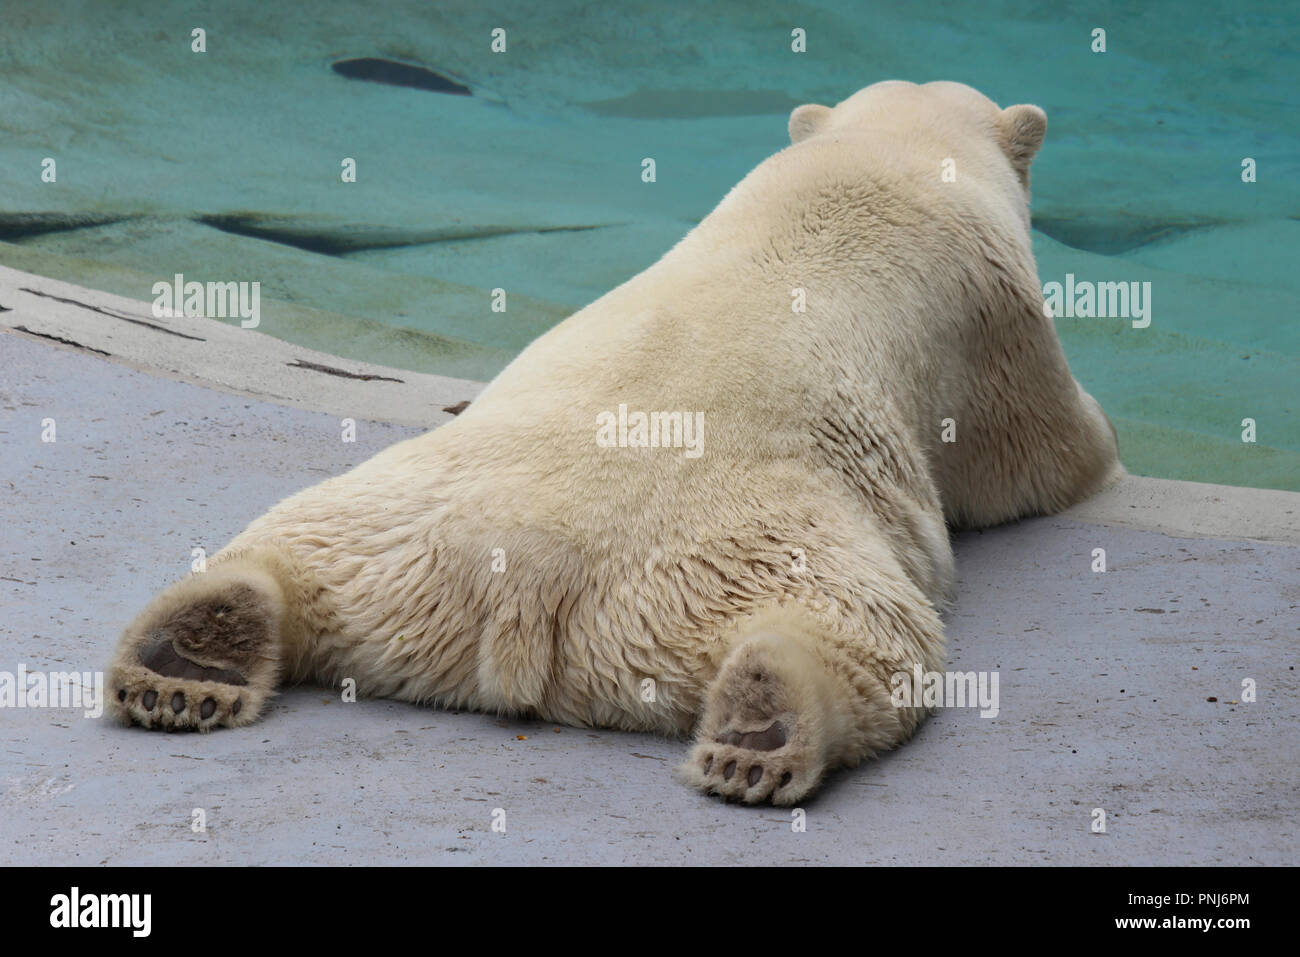 Eisbär vom Faulenzen auf seinem Bauch, Aquarium du Quebec, Kanada Stockfoto